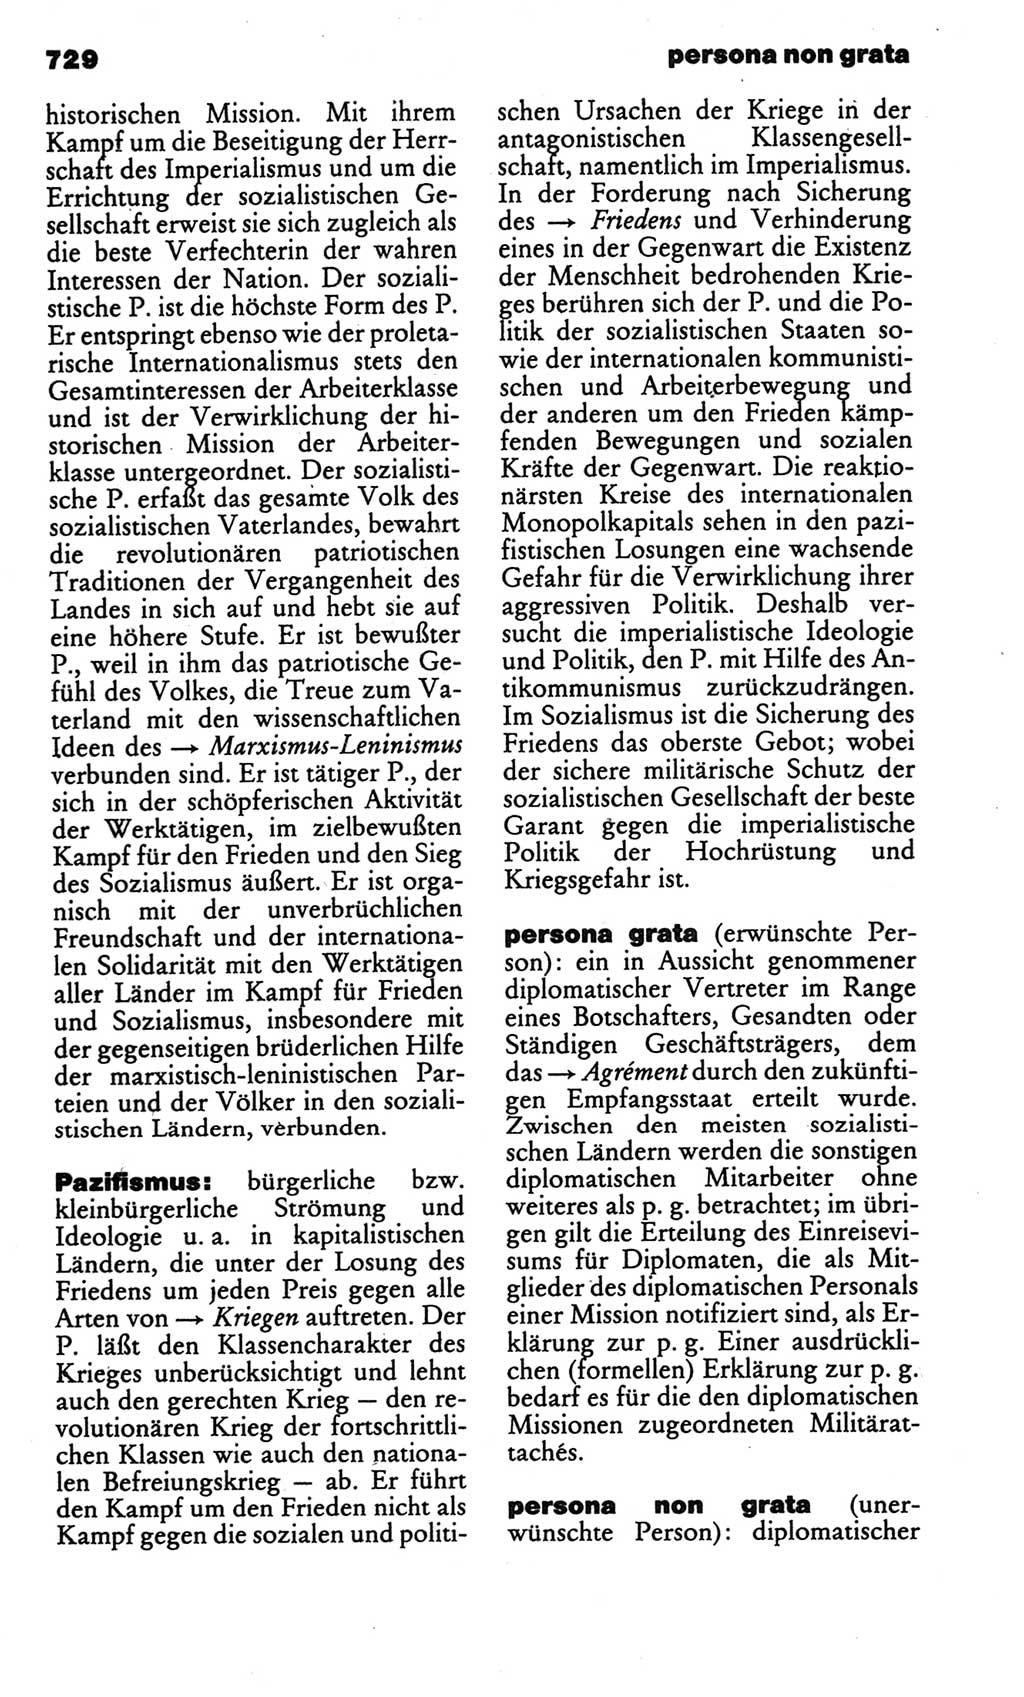 Kleines politisches Wörterbuch [Deutsche Demokratische Republik (DDR)] 1986, Seite 729 (Kl. pol. Wb. DDR 1986, S. 729)